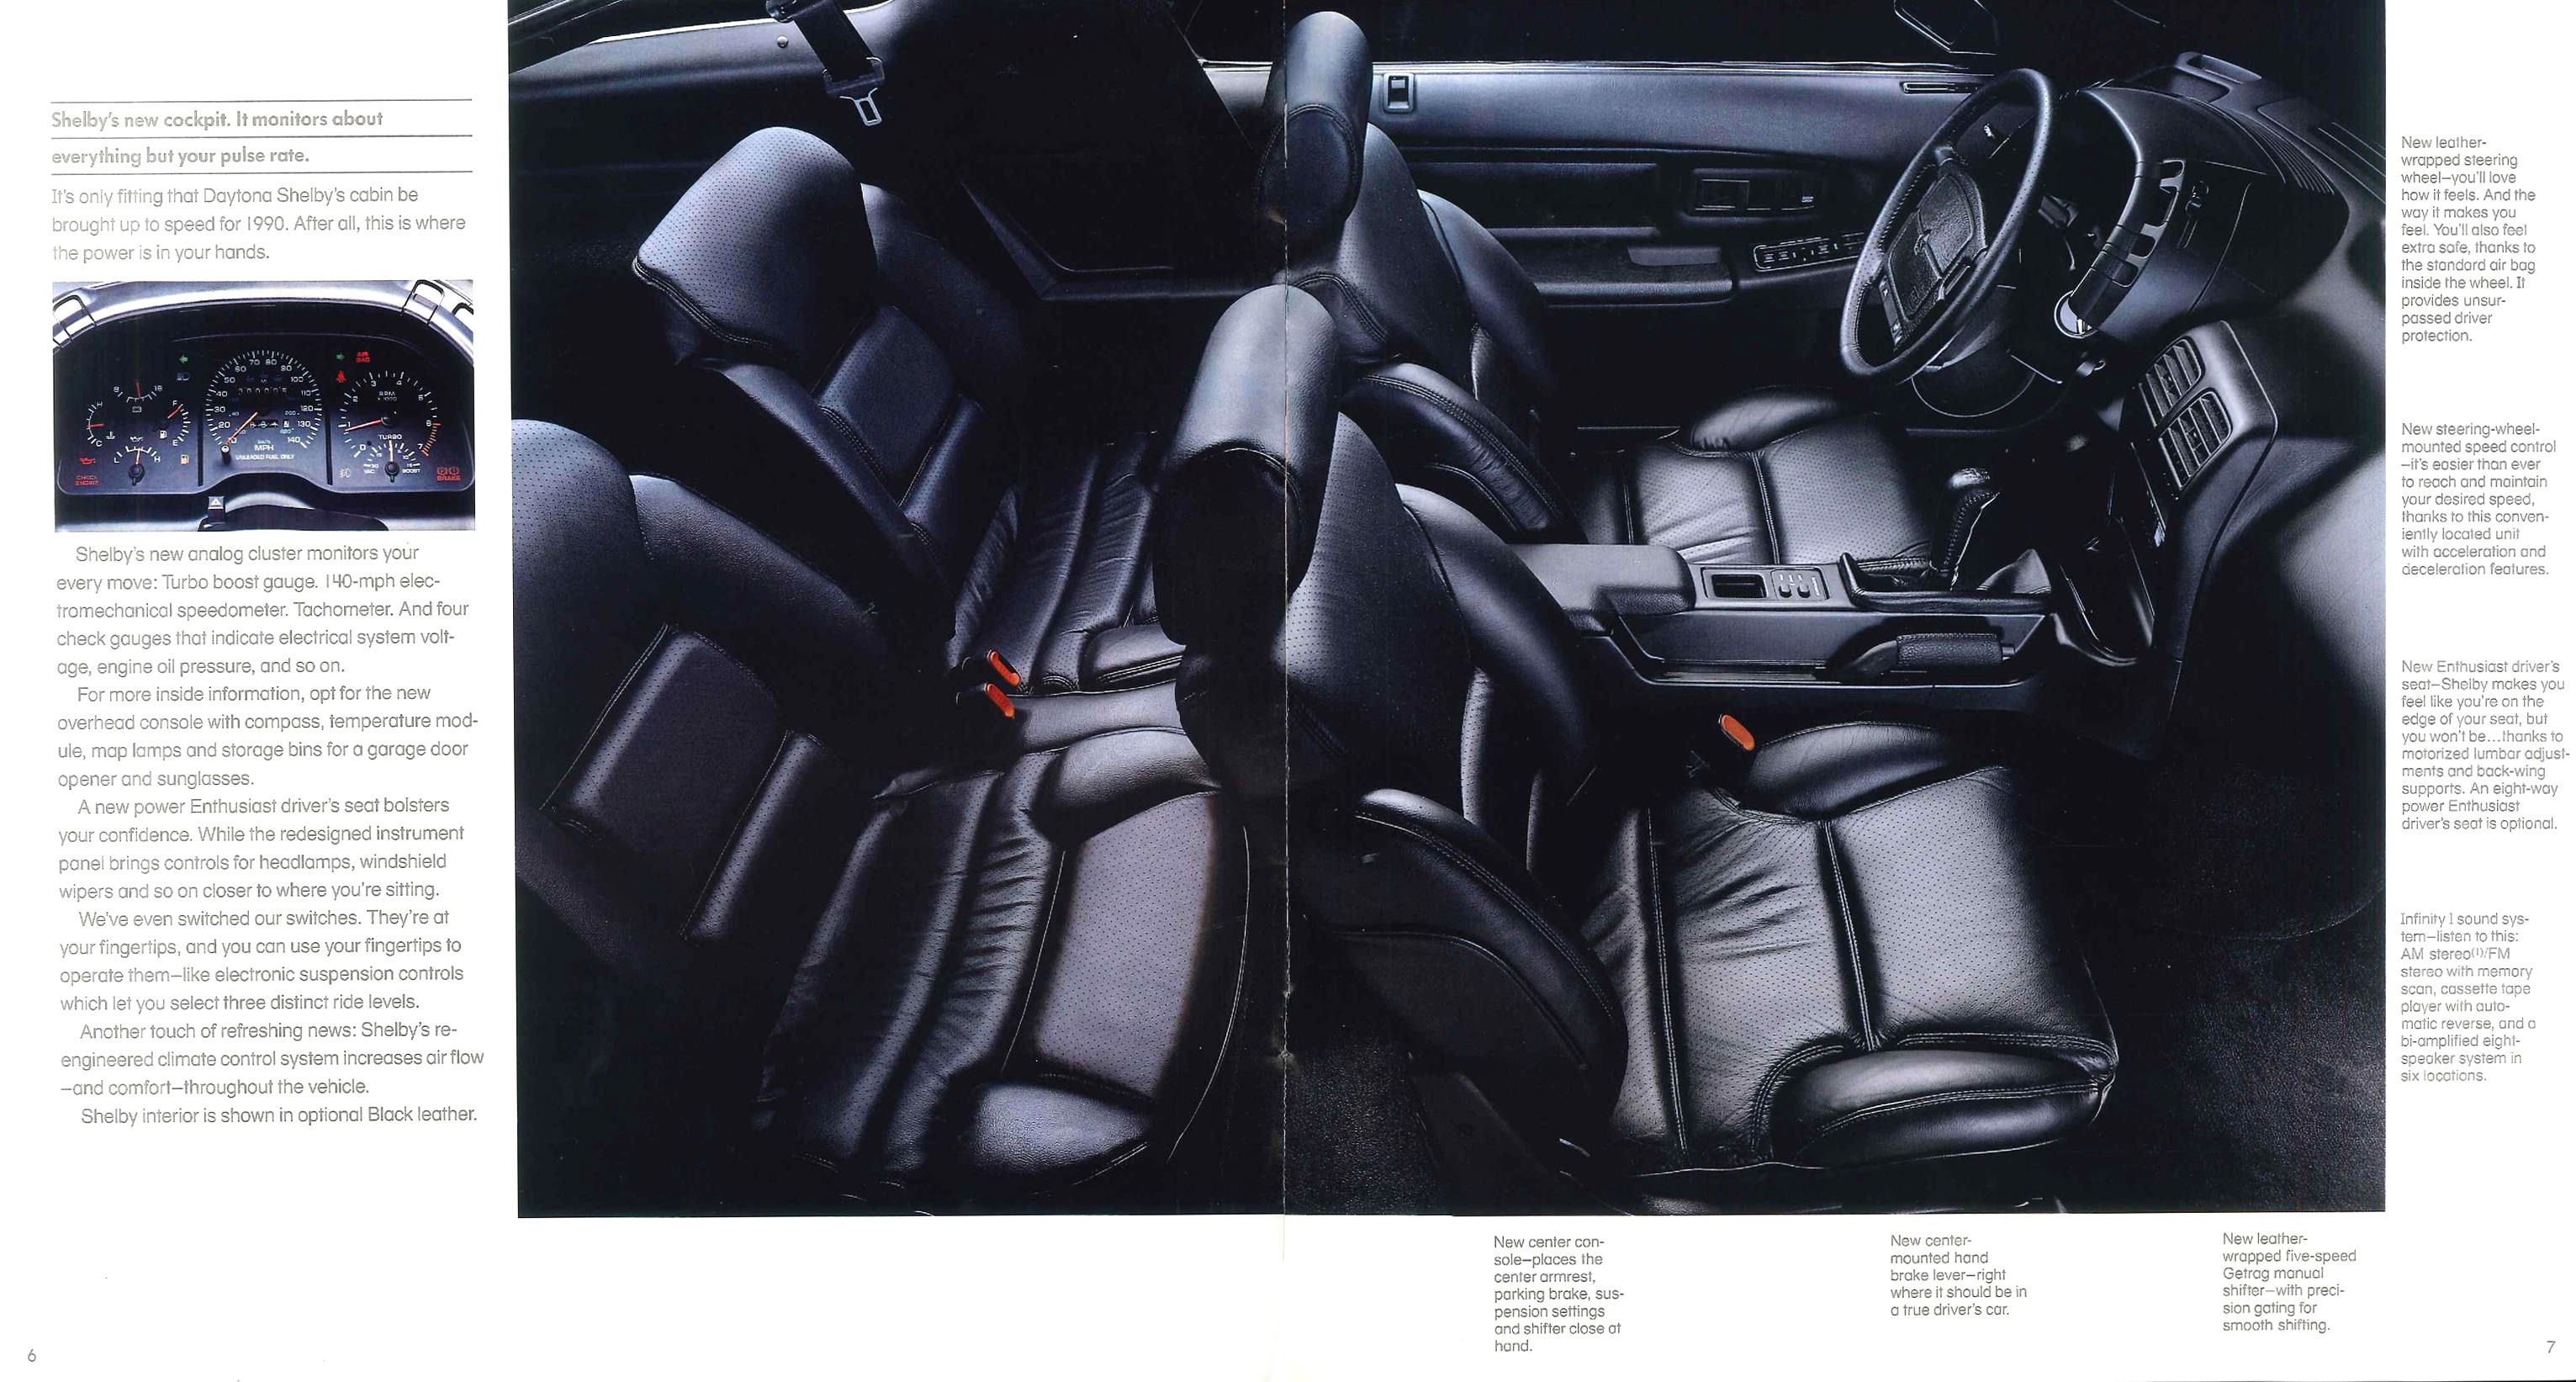 1990_Dodge_Daytona-06-07